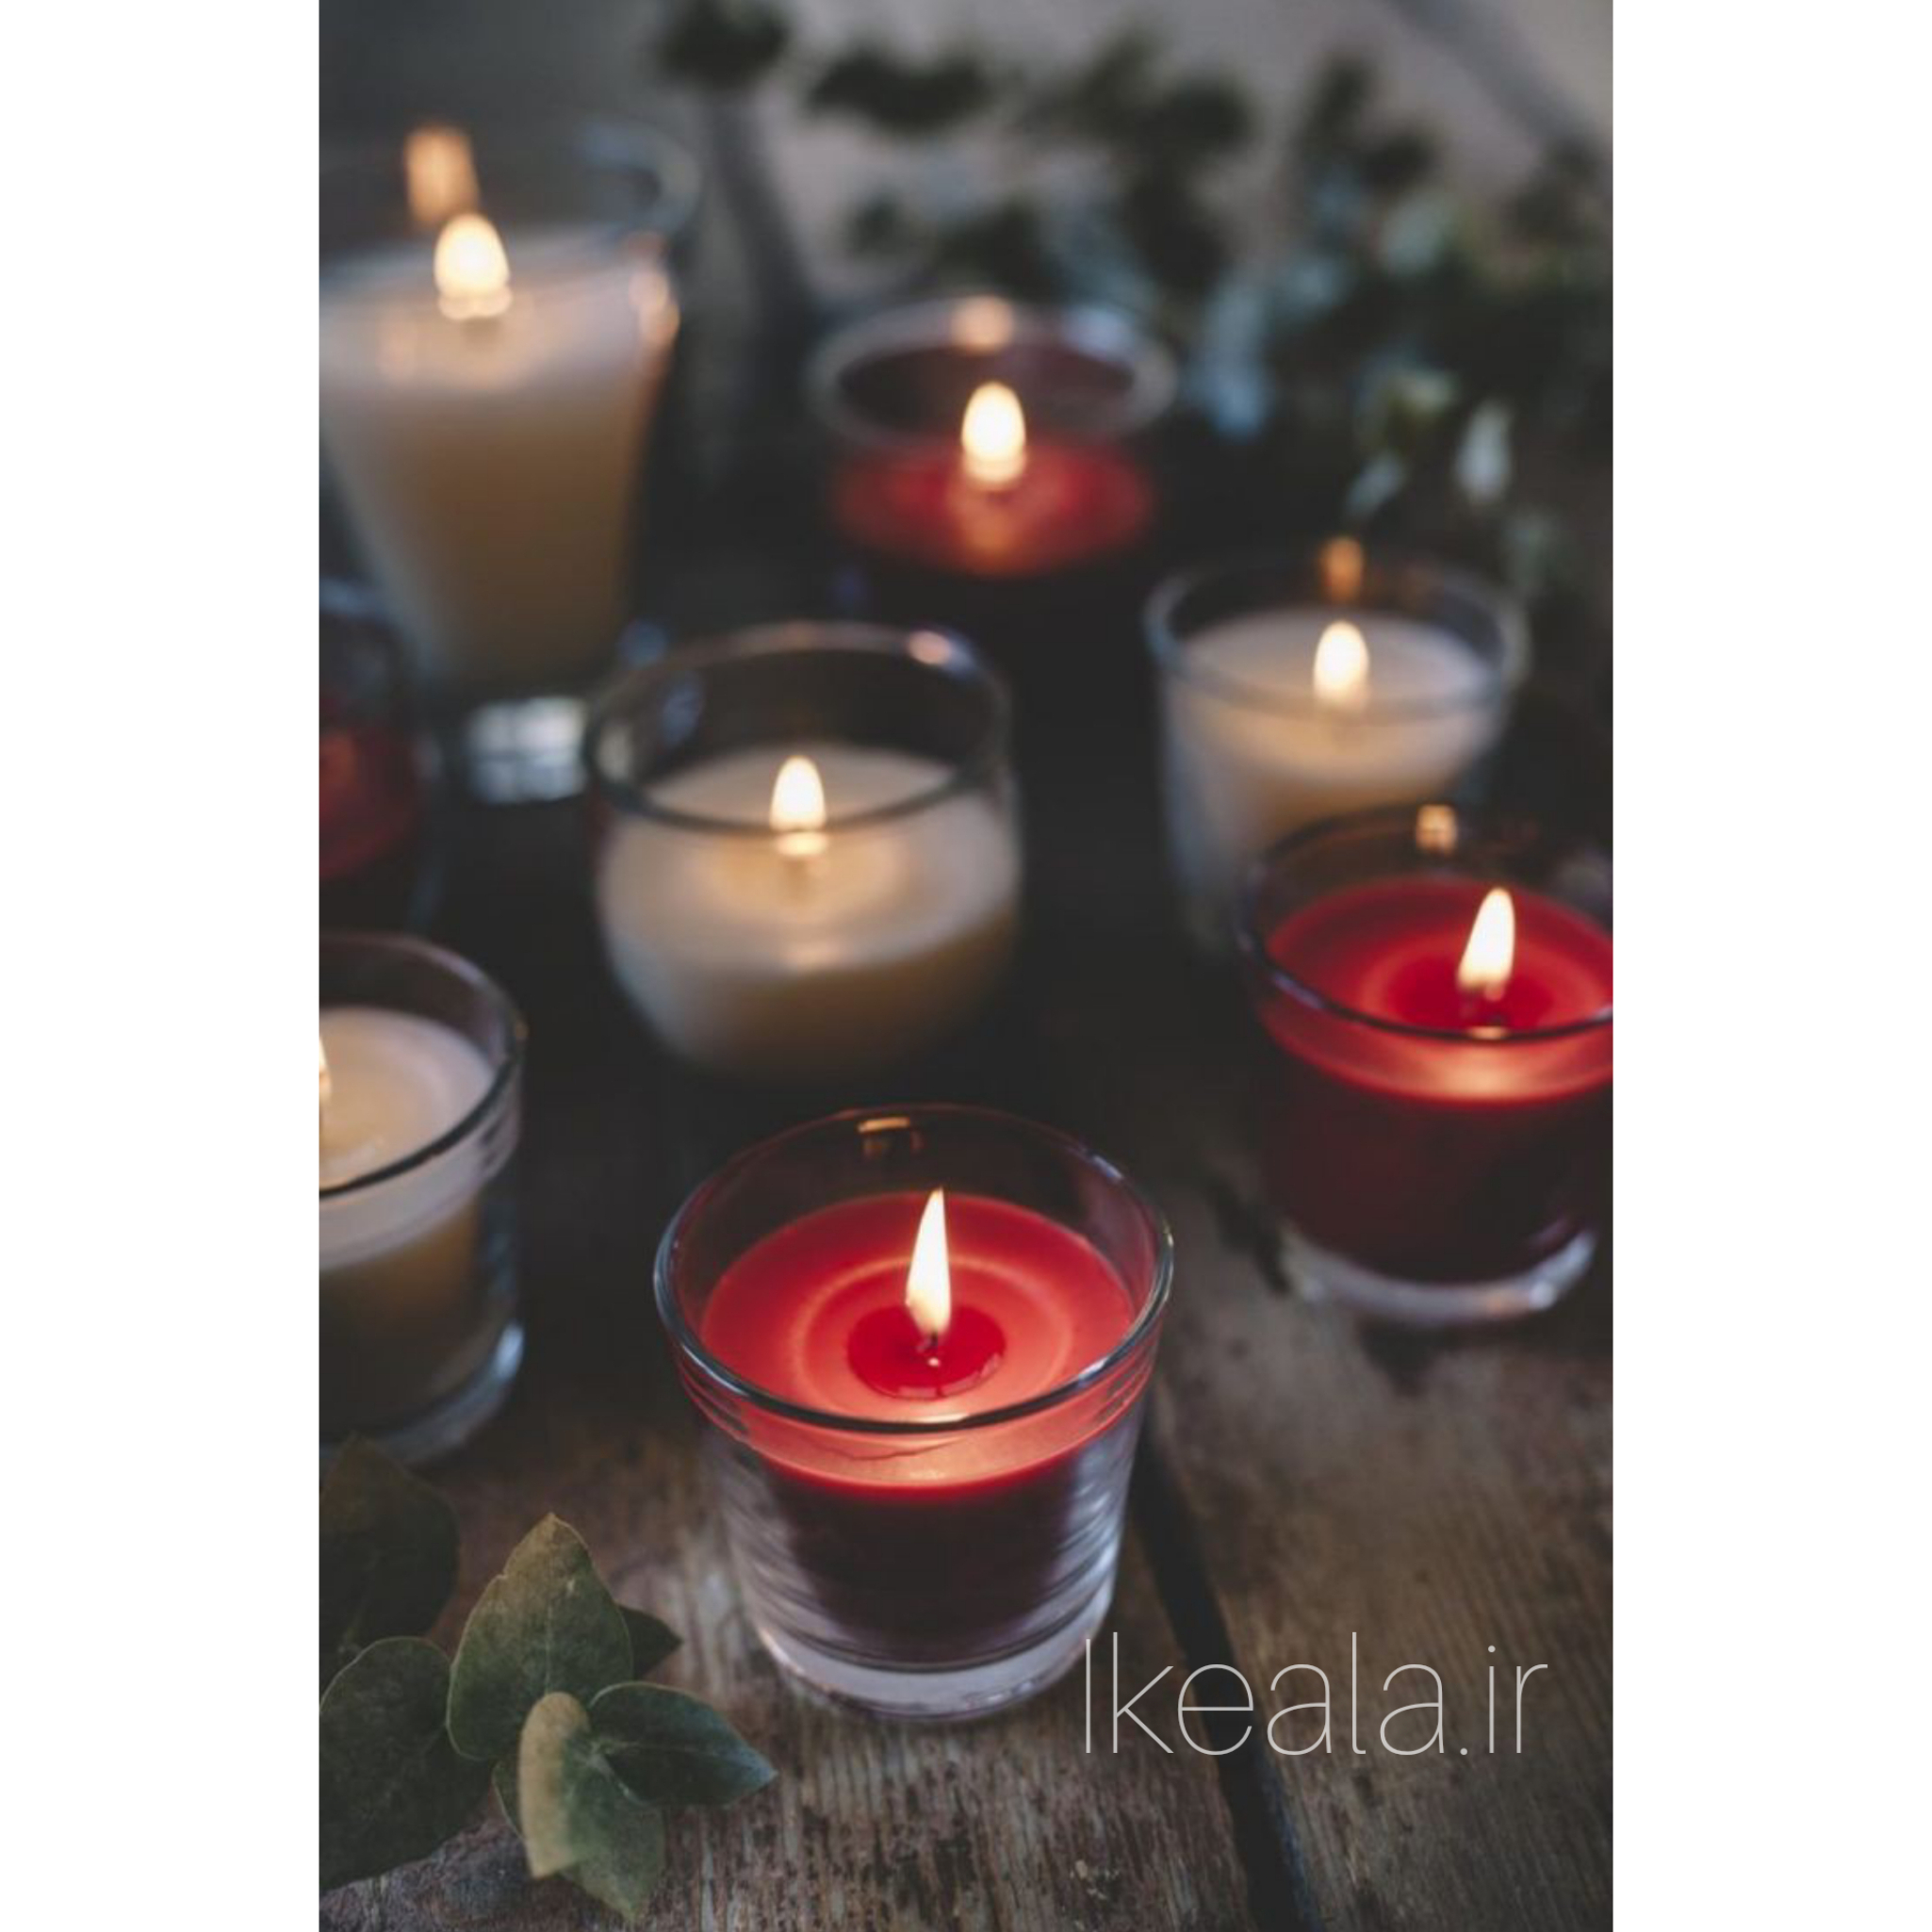  شمع قرمز یلدا خرید اینترنتی شمع ایکیا با تخفیفات ویژه در فروشگاه اینترنتی ایکیا سایت ایکیلا 